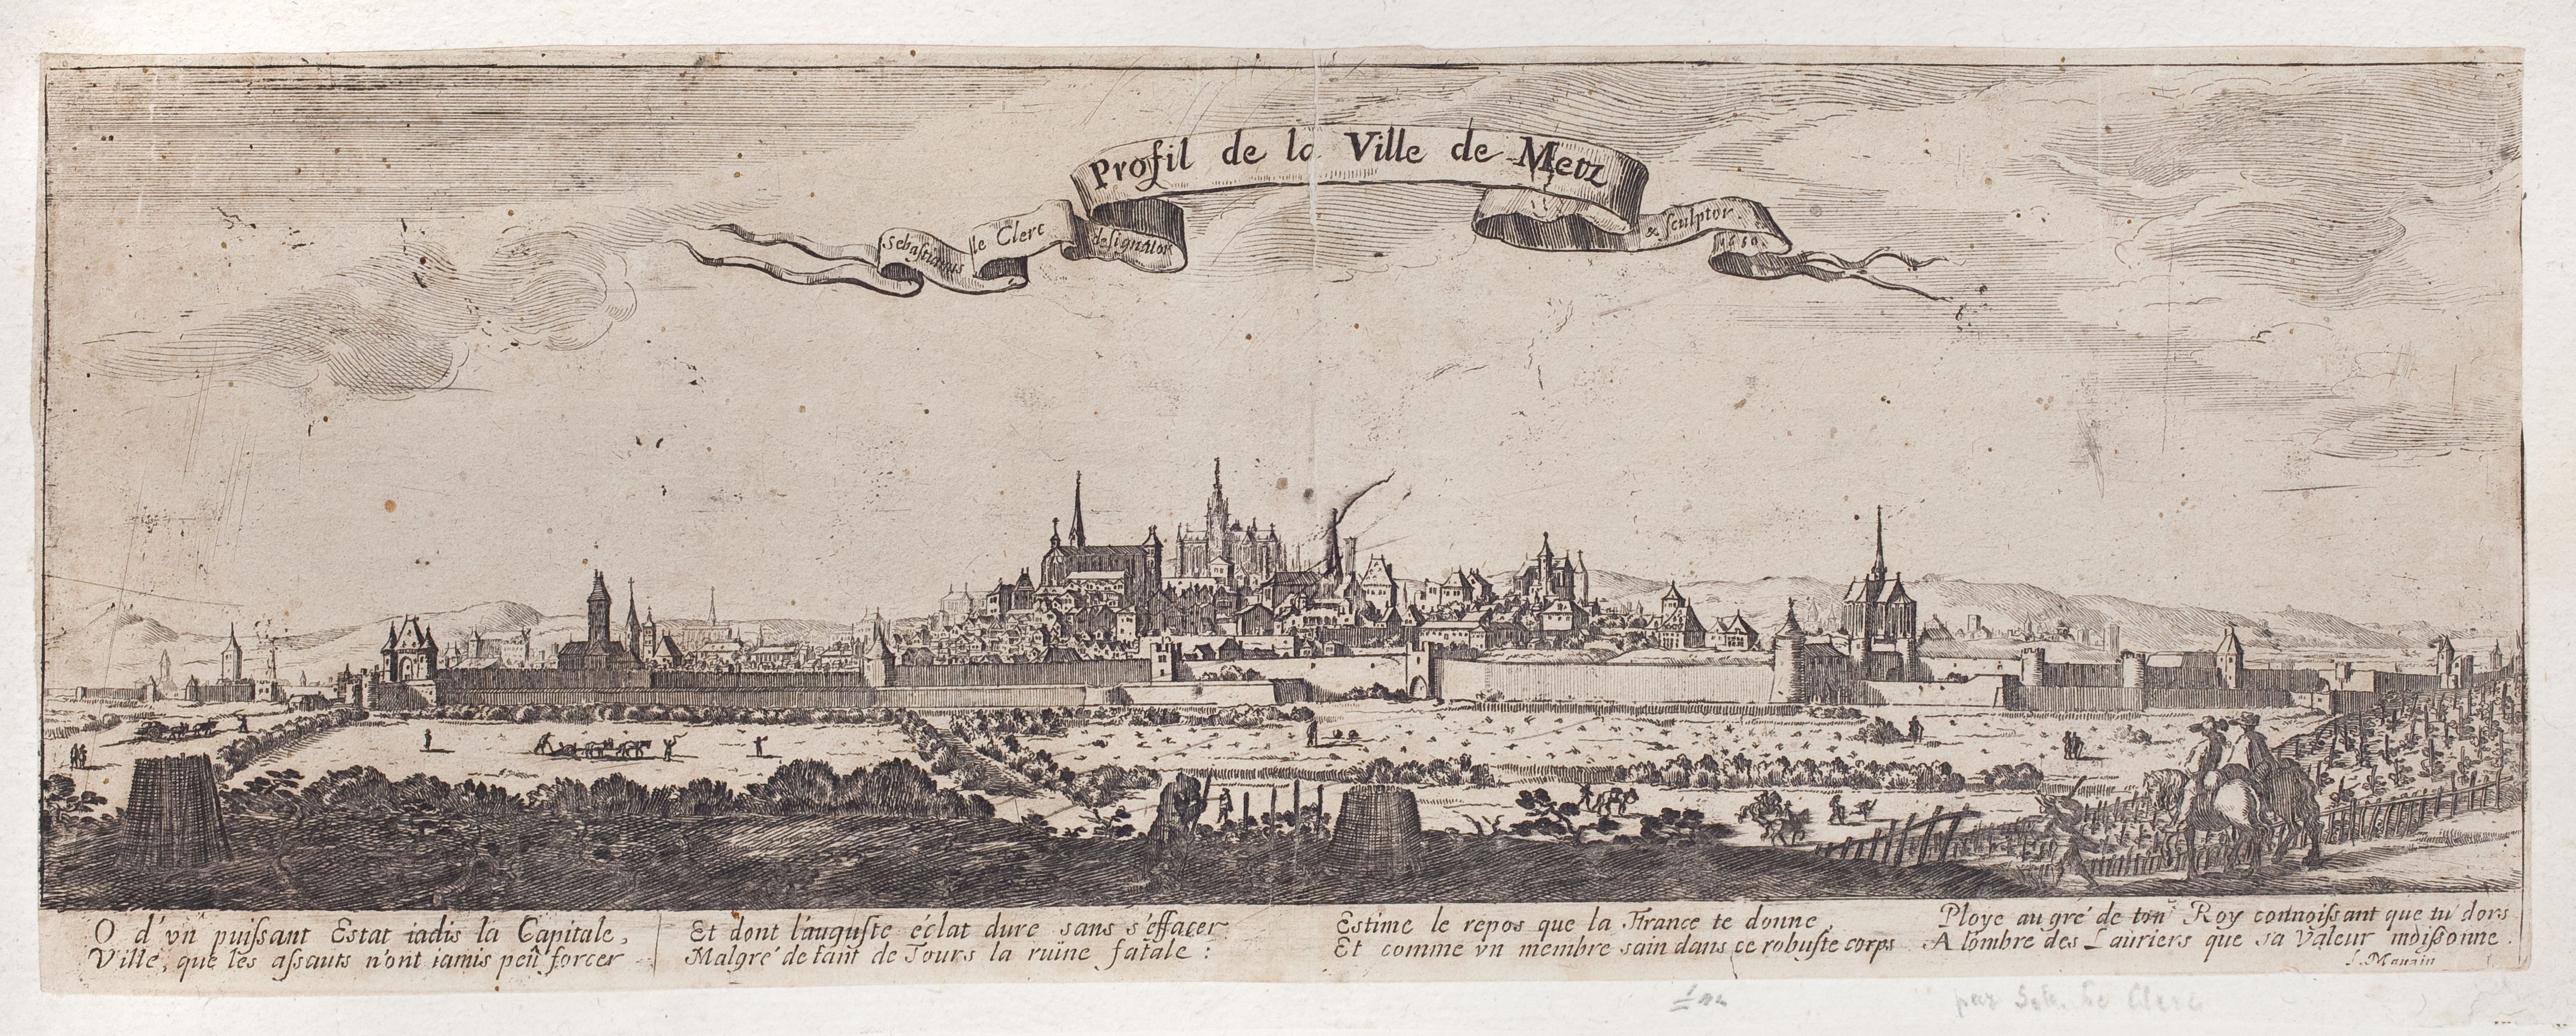 Contenu du Profil de la ville de Metz